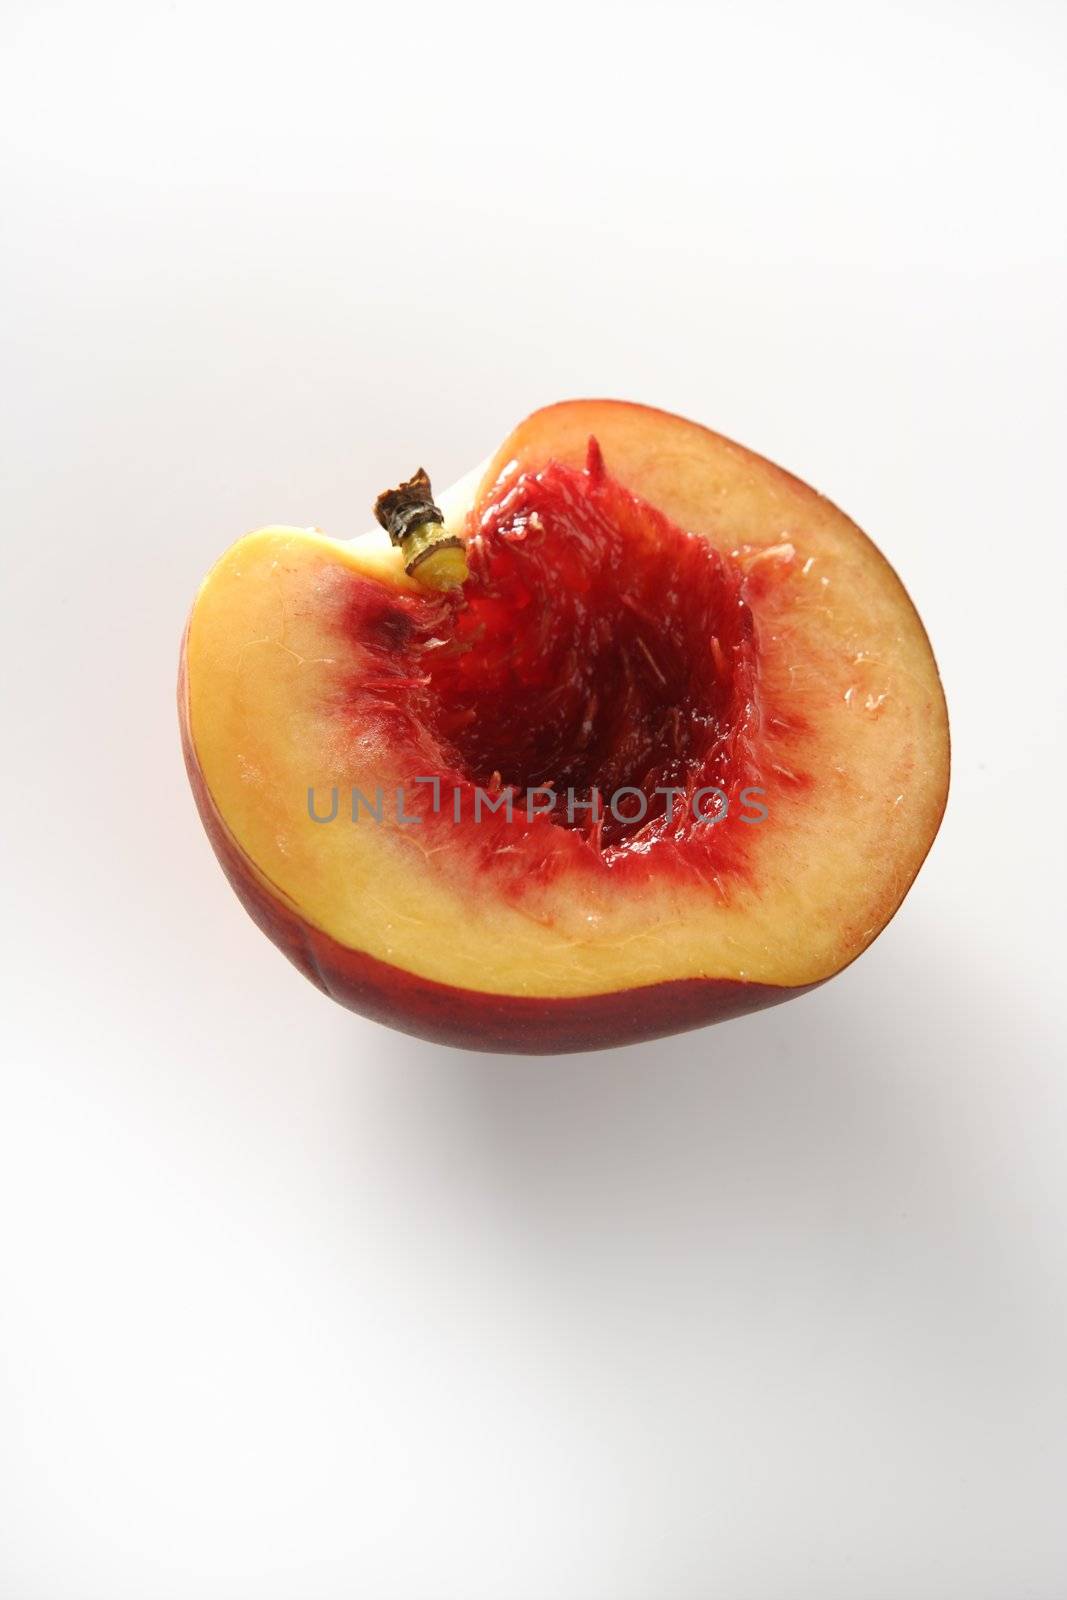 Metaphor of bloody inside of half peach